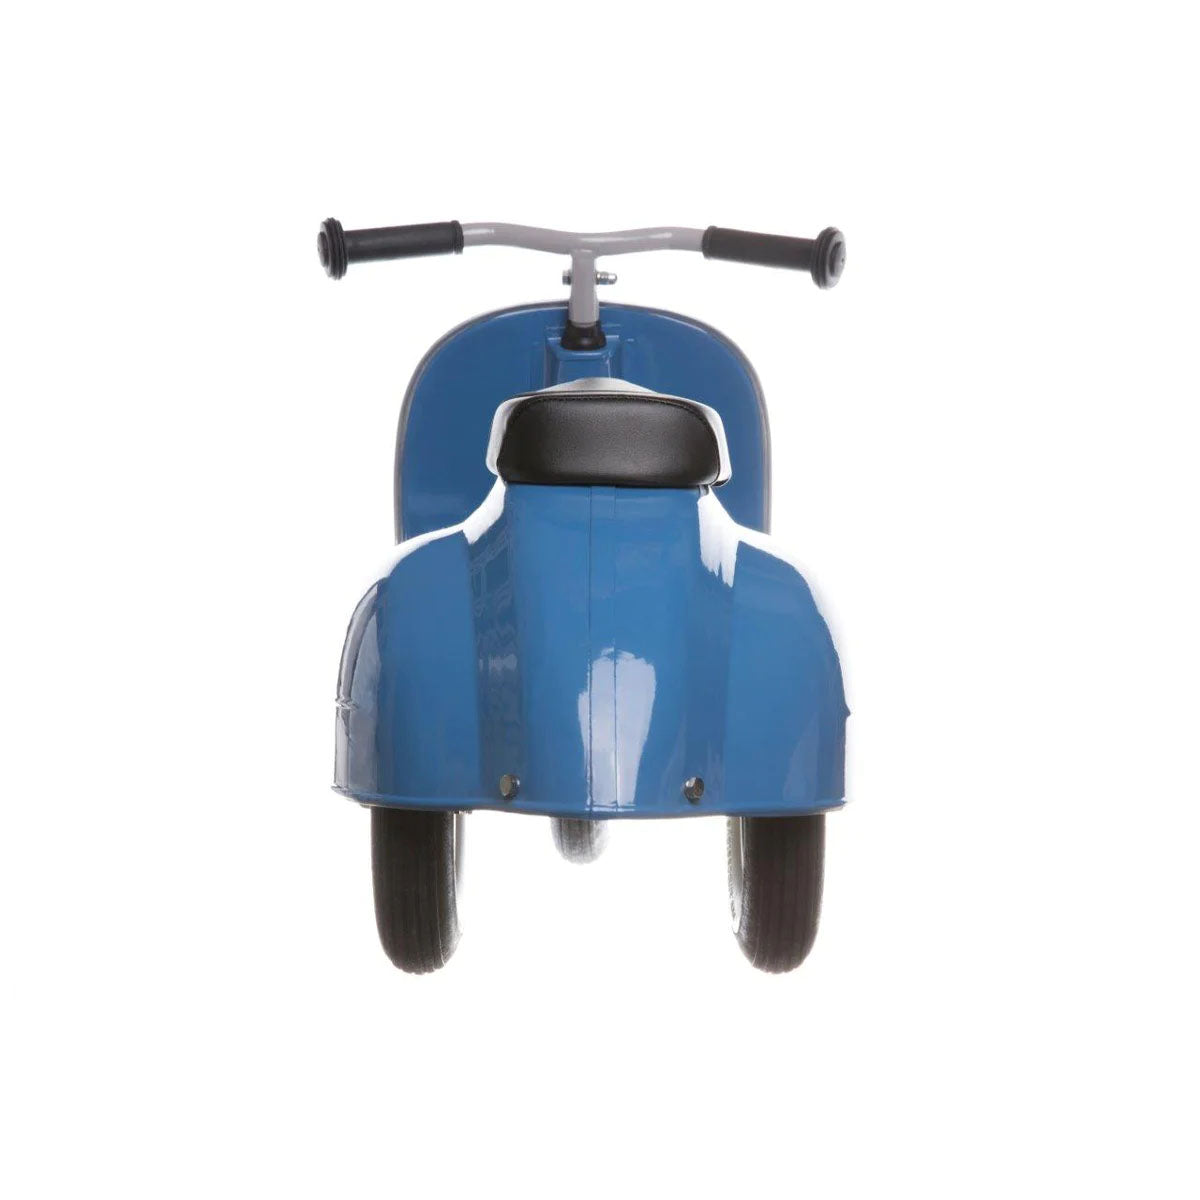 Wat krijg je als je speelplezier combineert met Italiaans design? De prachtige Primo ride-on loopscooter van Ambosstoys in het blauw! Deze mooie loopscooter ziet er niet alleen prachtig uit, maar zal ook voor uren speelplezier zorgen bij je kleintje. VanZus